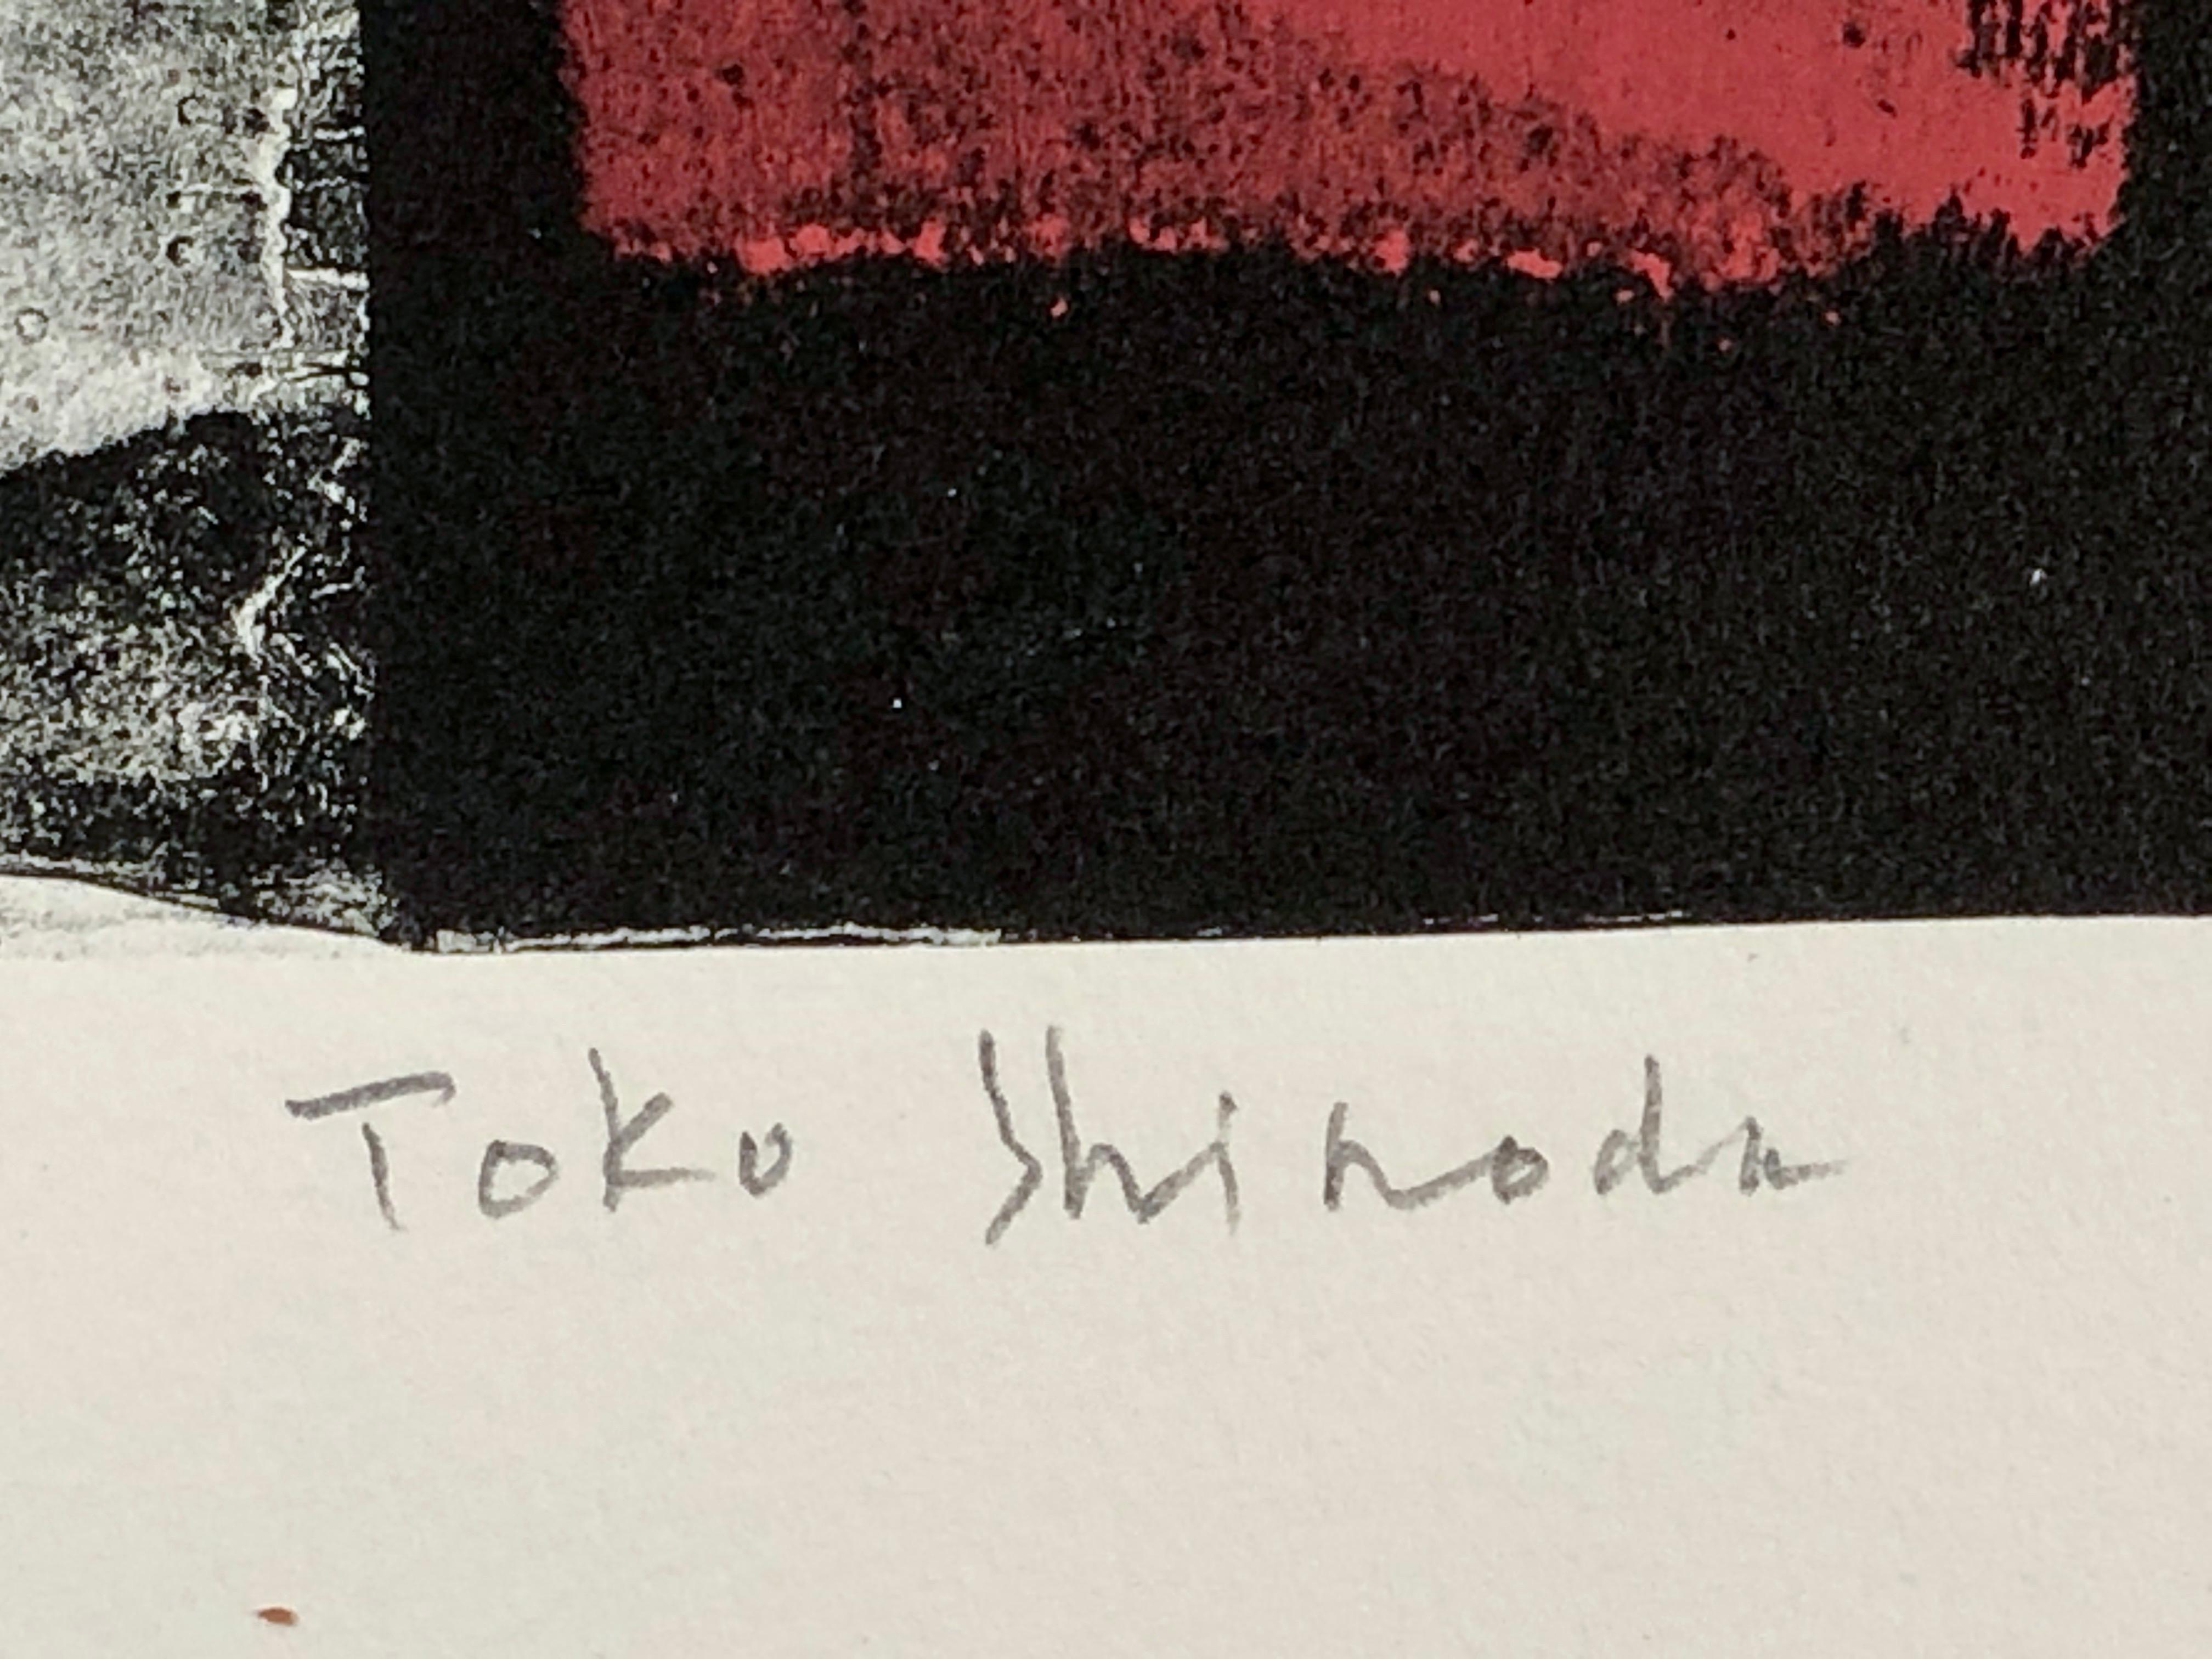 shinoda tōkō